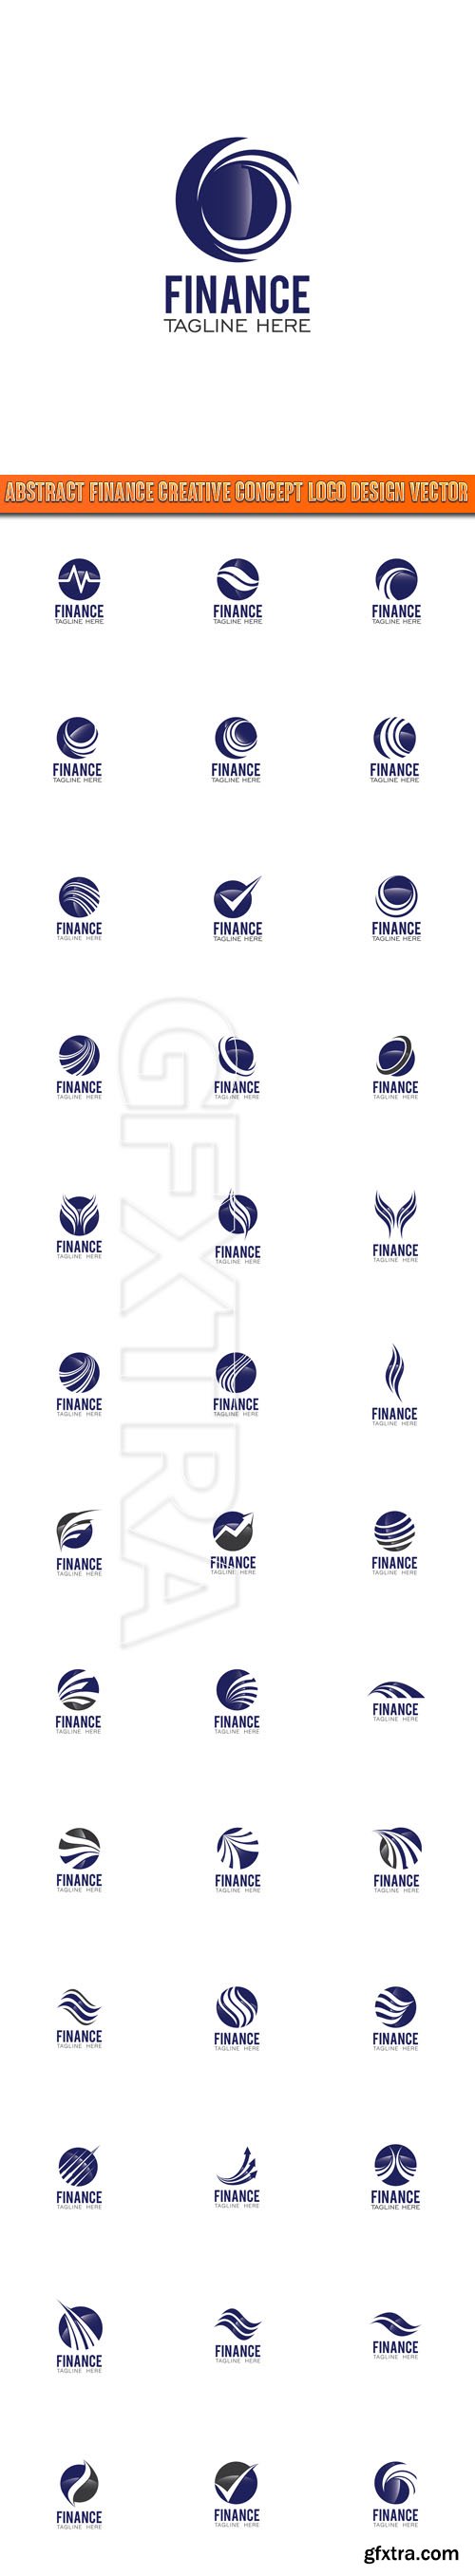 Abstract Finance Creative Concept Logo Design vector